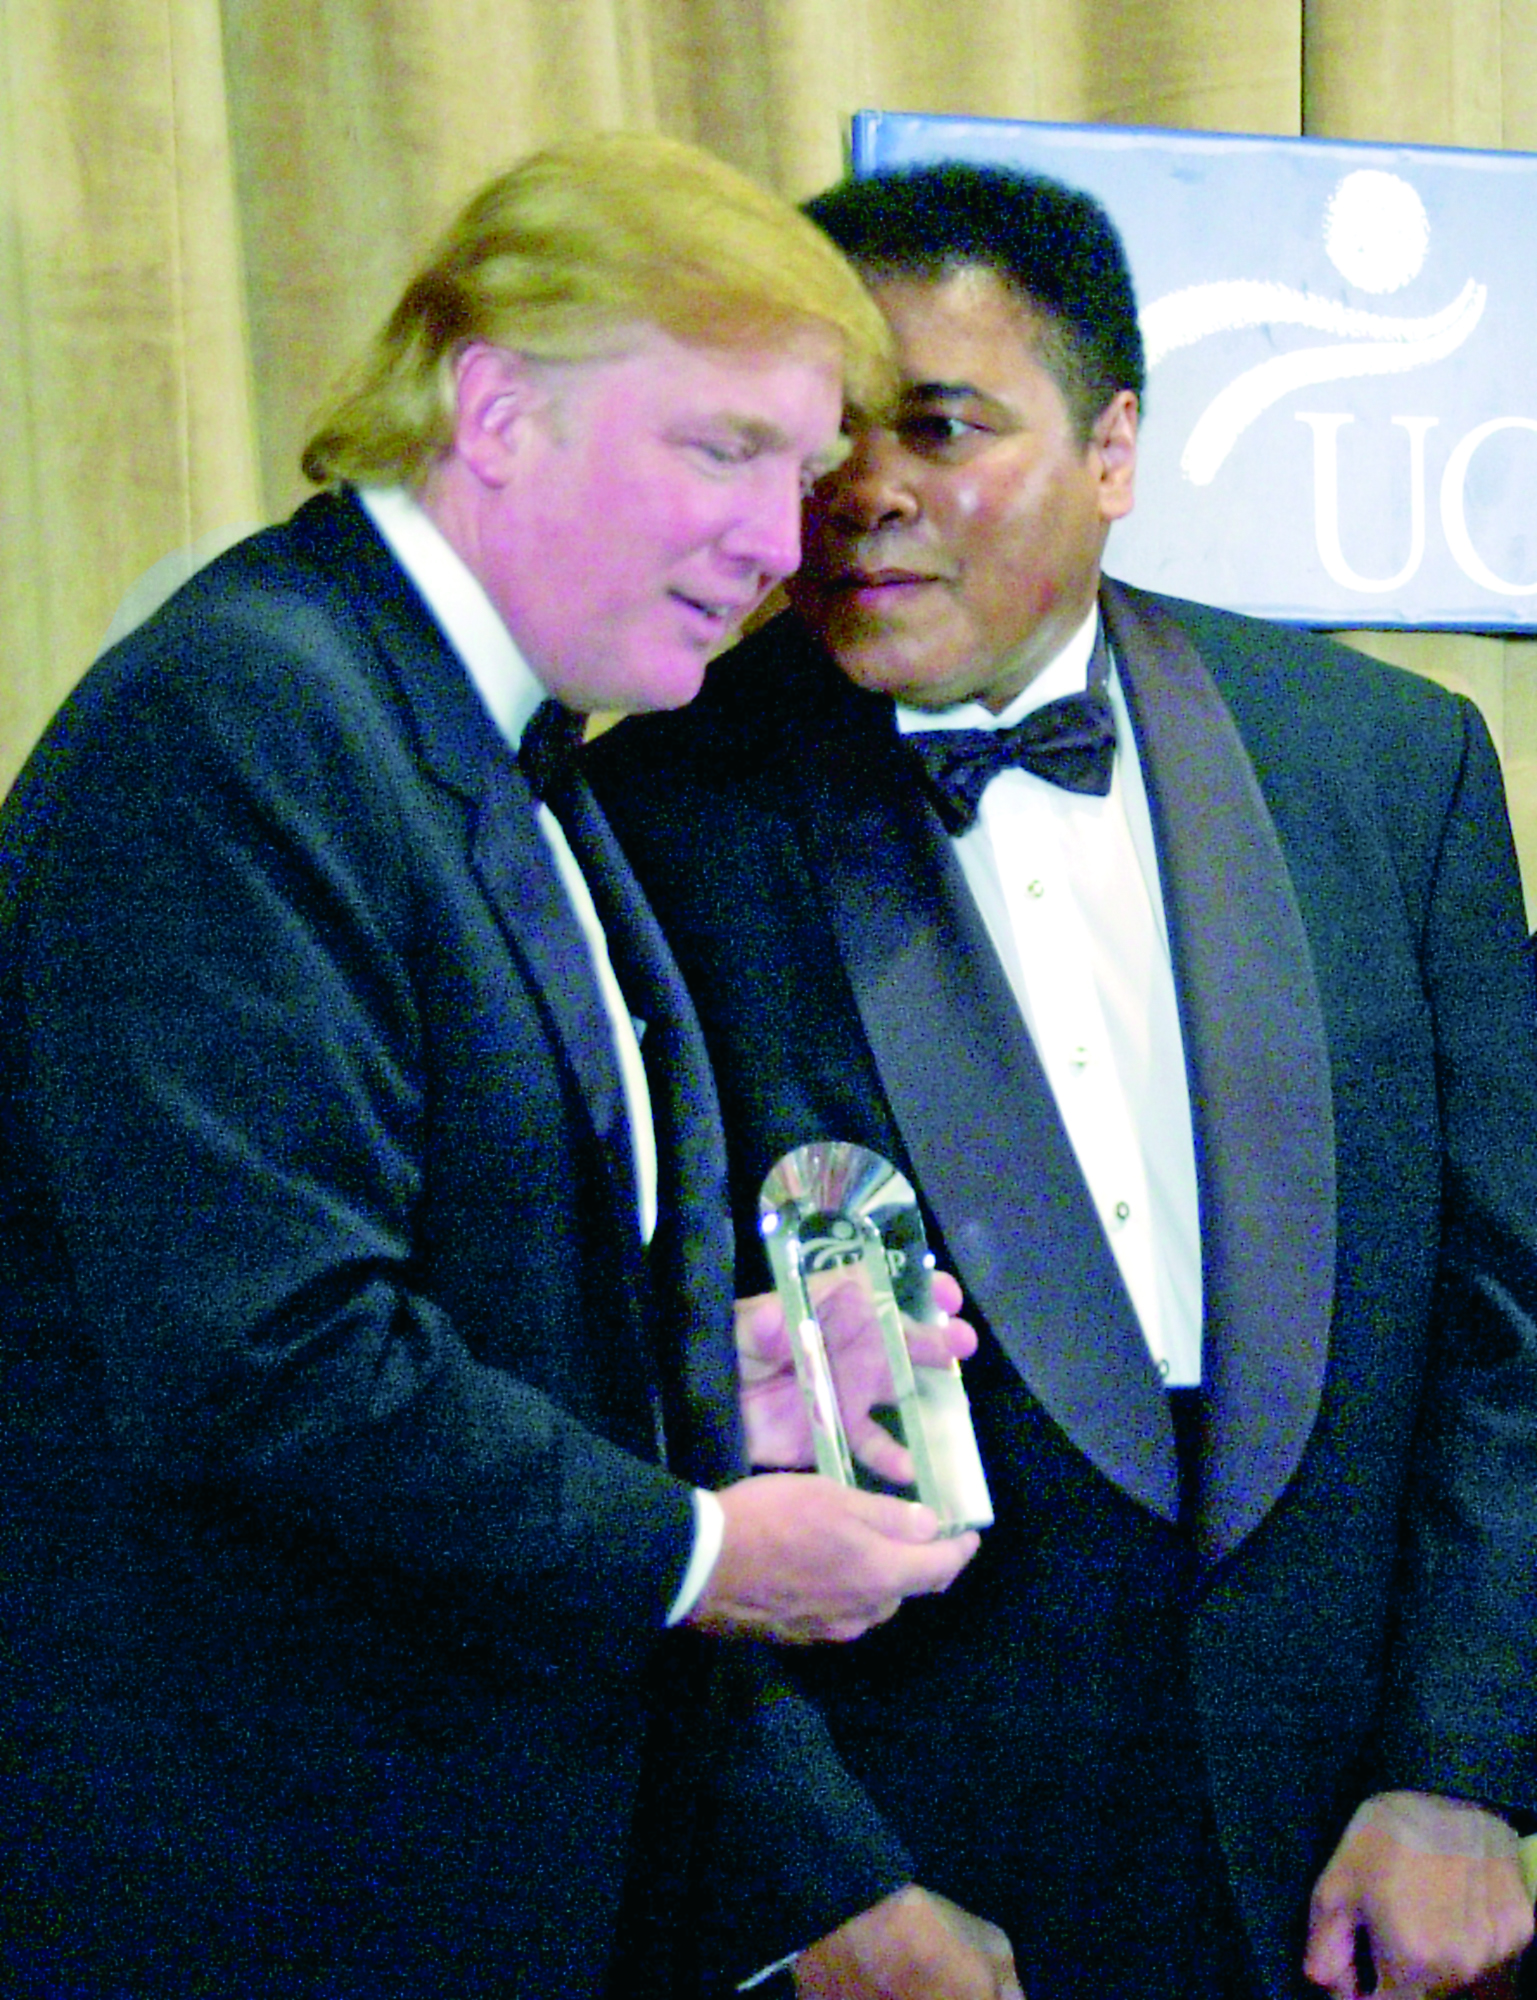 Ali y Kareem se unen vs. Trump